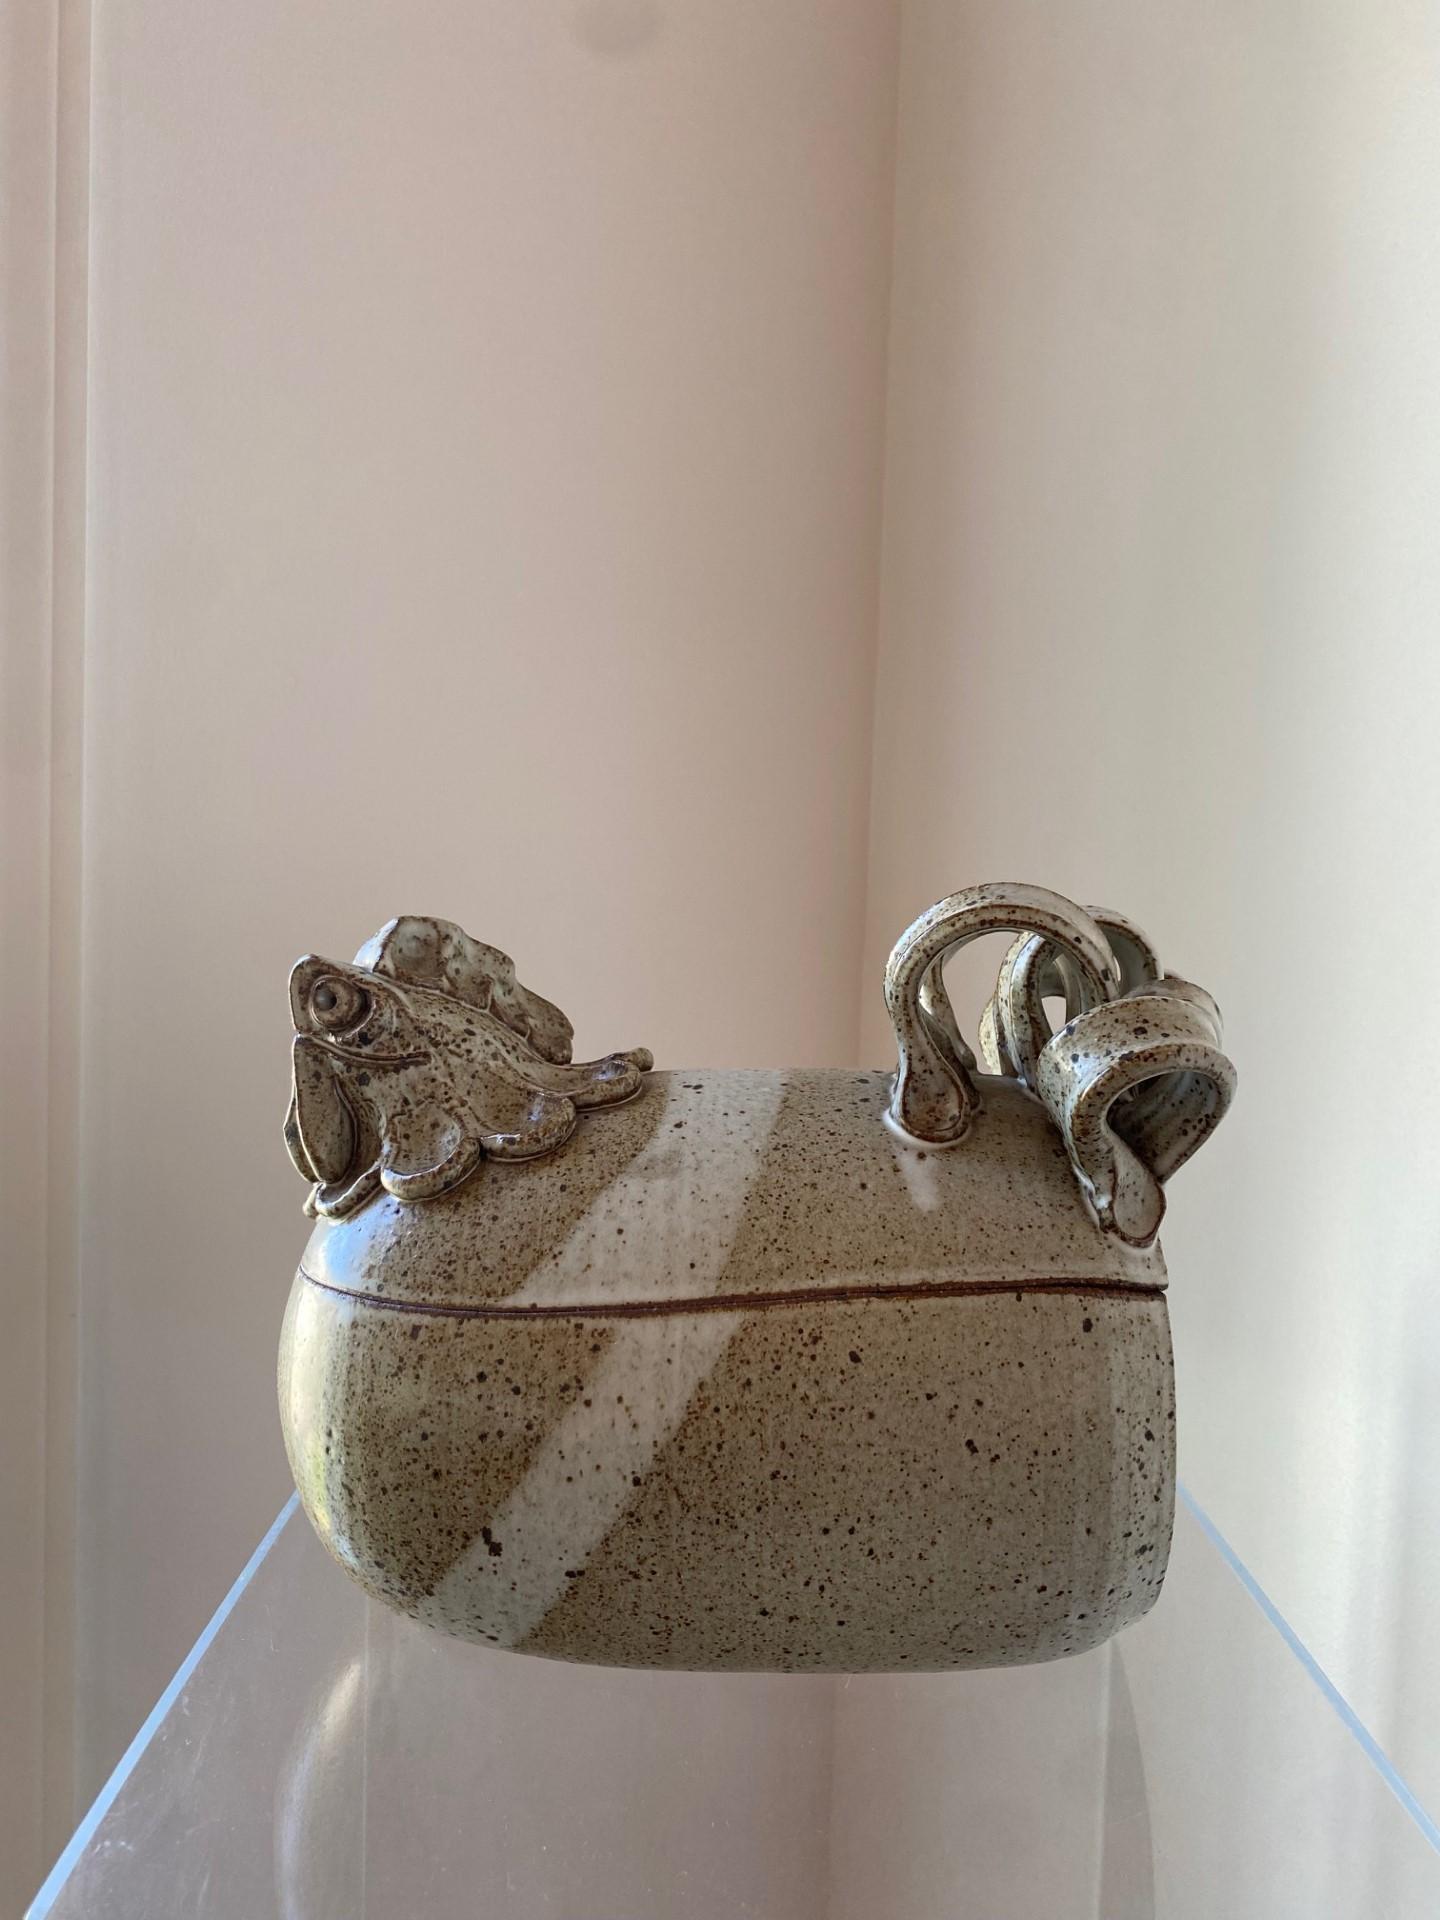 Magnifique soupière sculpturale en céramique d'Anthony Stoneware.  Fondé en 1966, le studio de poterie céramique Paul/One s'est efforcé de produire des objets fonctionnels en céramique d'une grande intégrité matérielle, d'une excellente conception